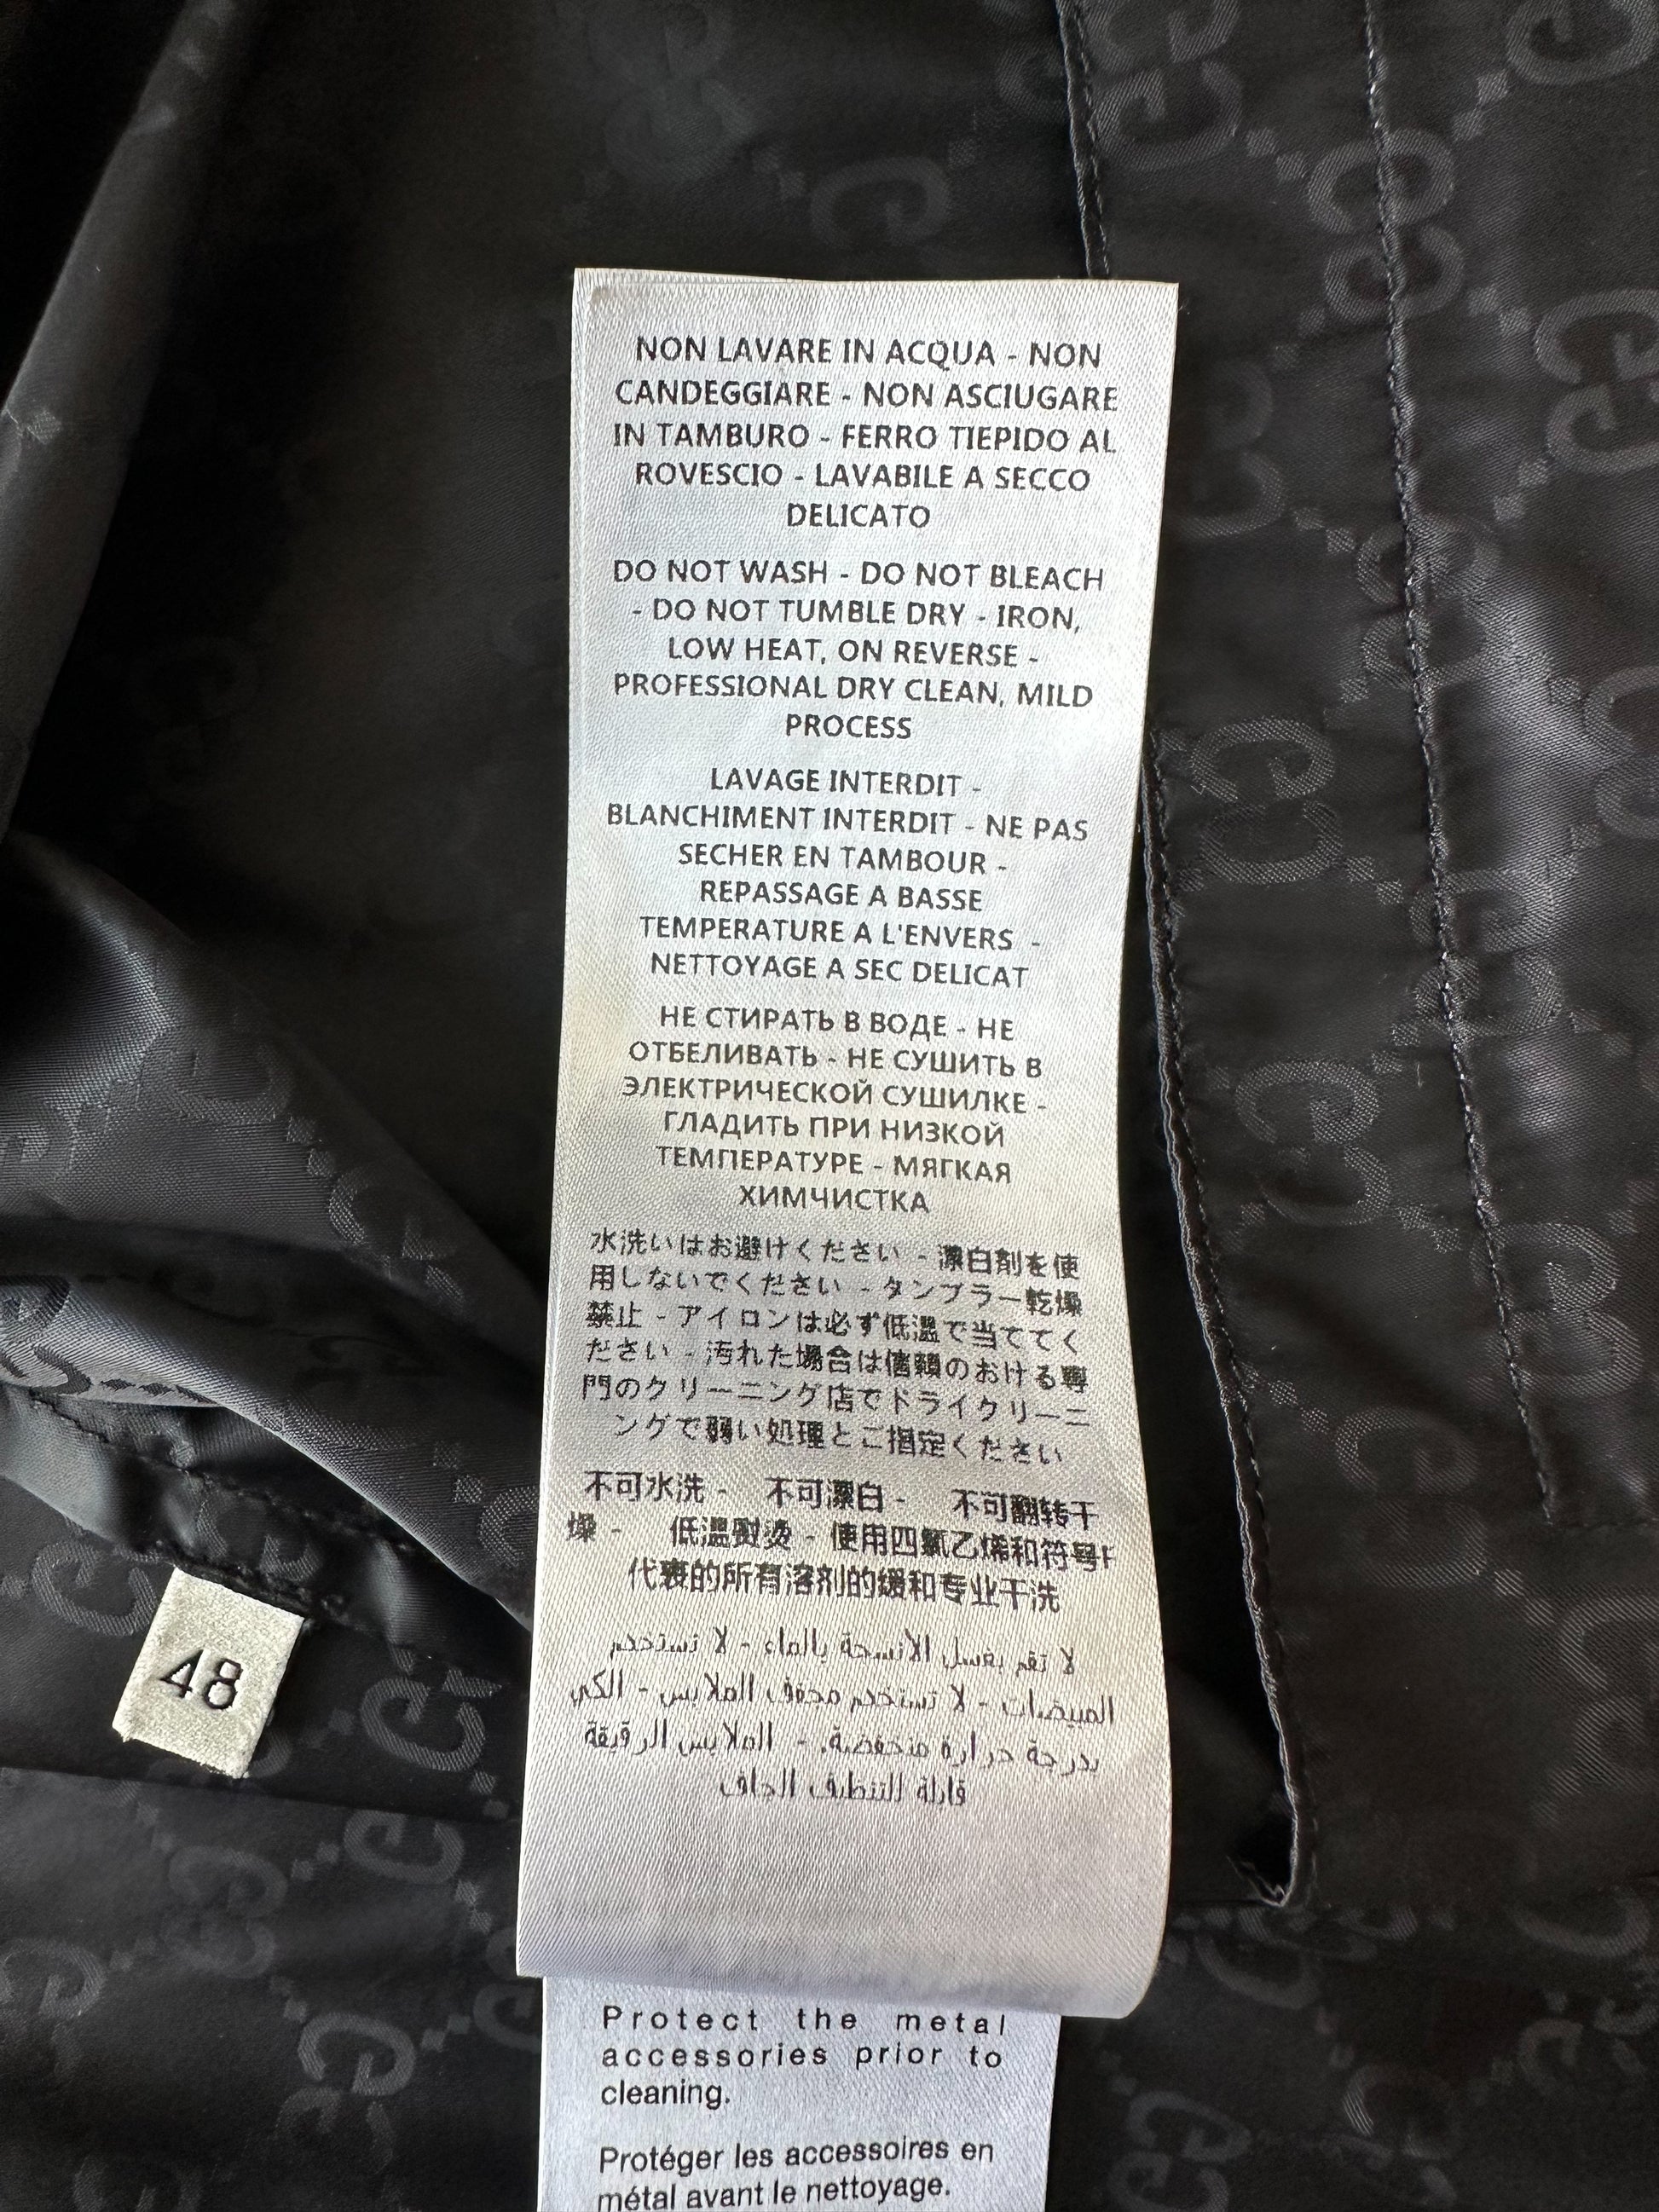 Gucci Blue GG Monogram Canvas Zip Up Jacket – Savonches